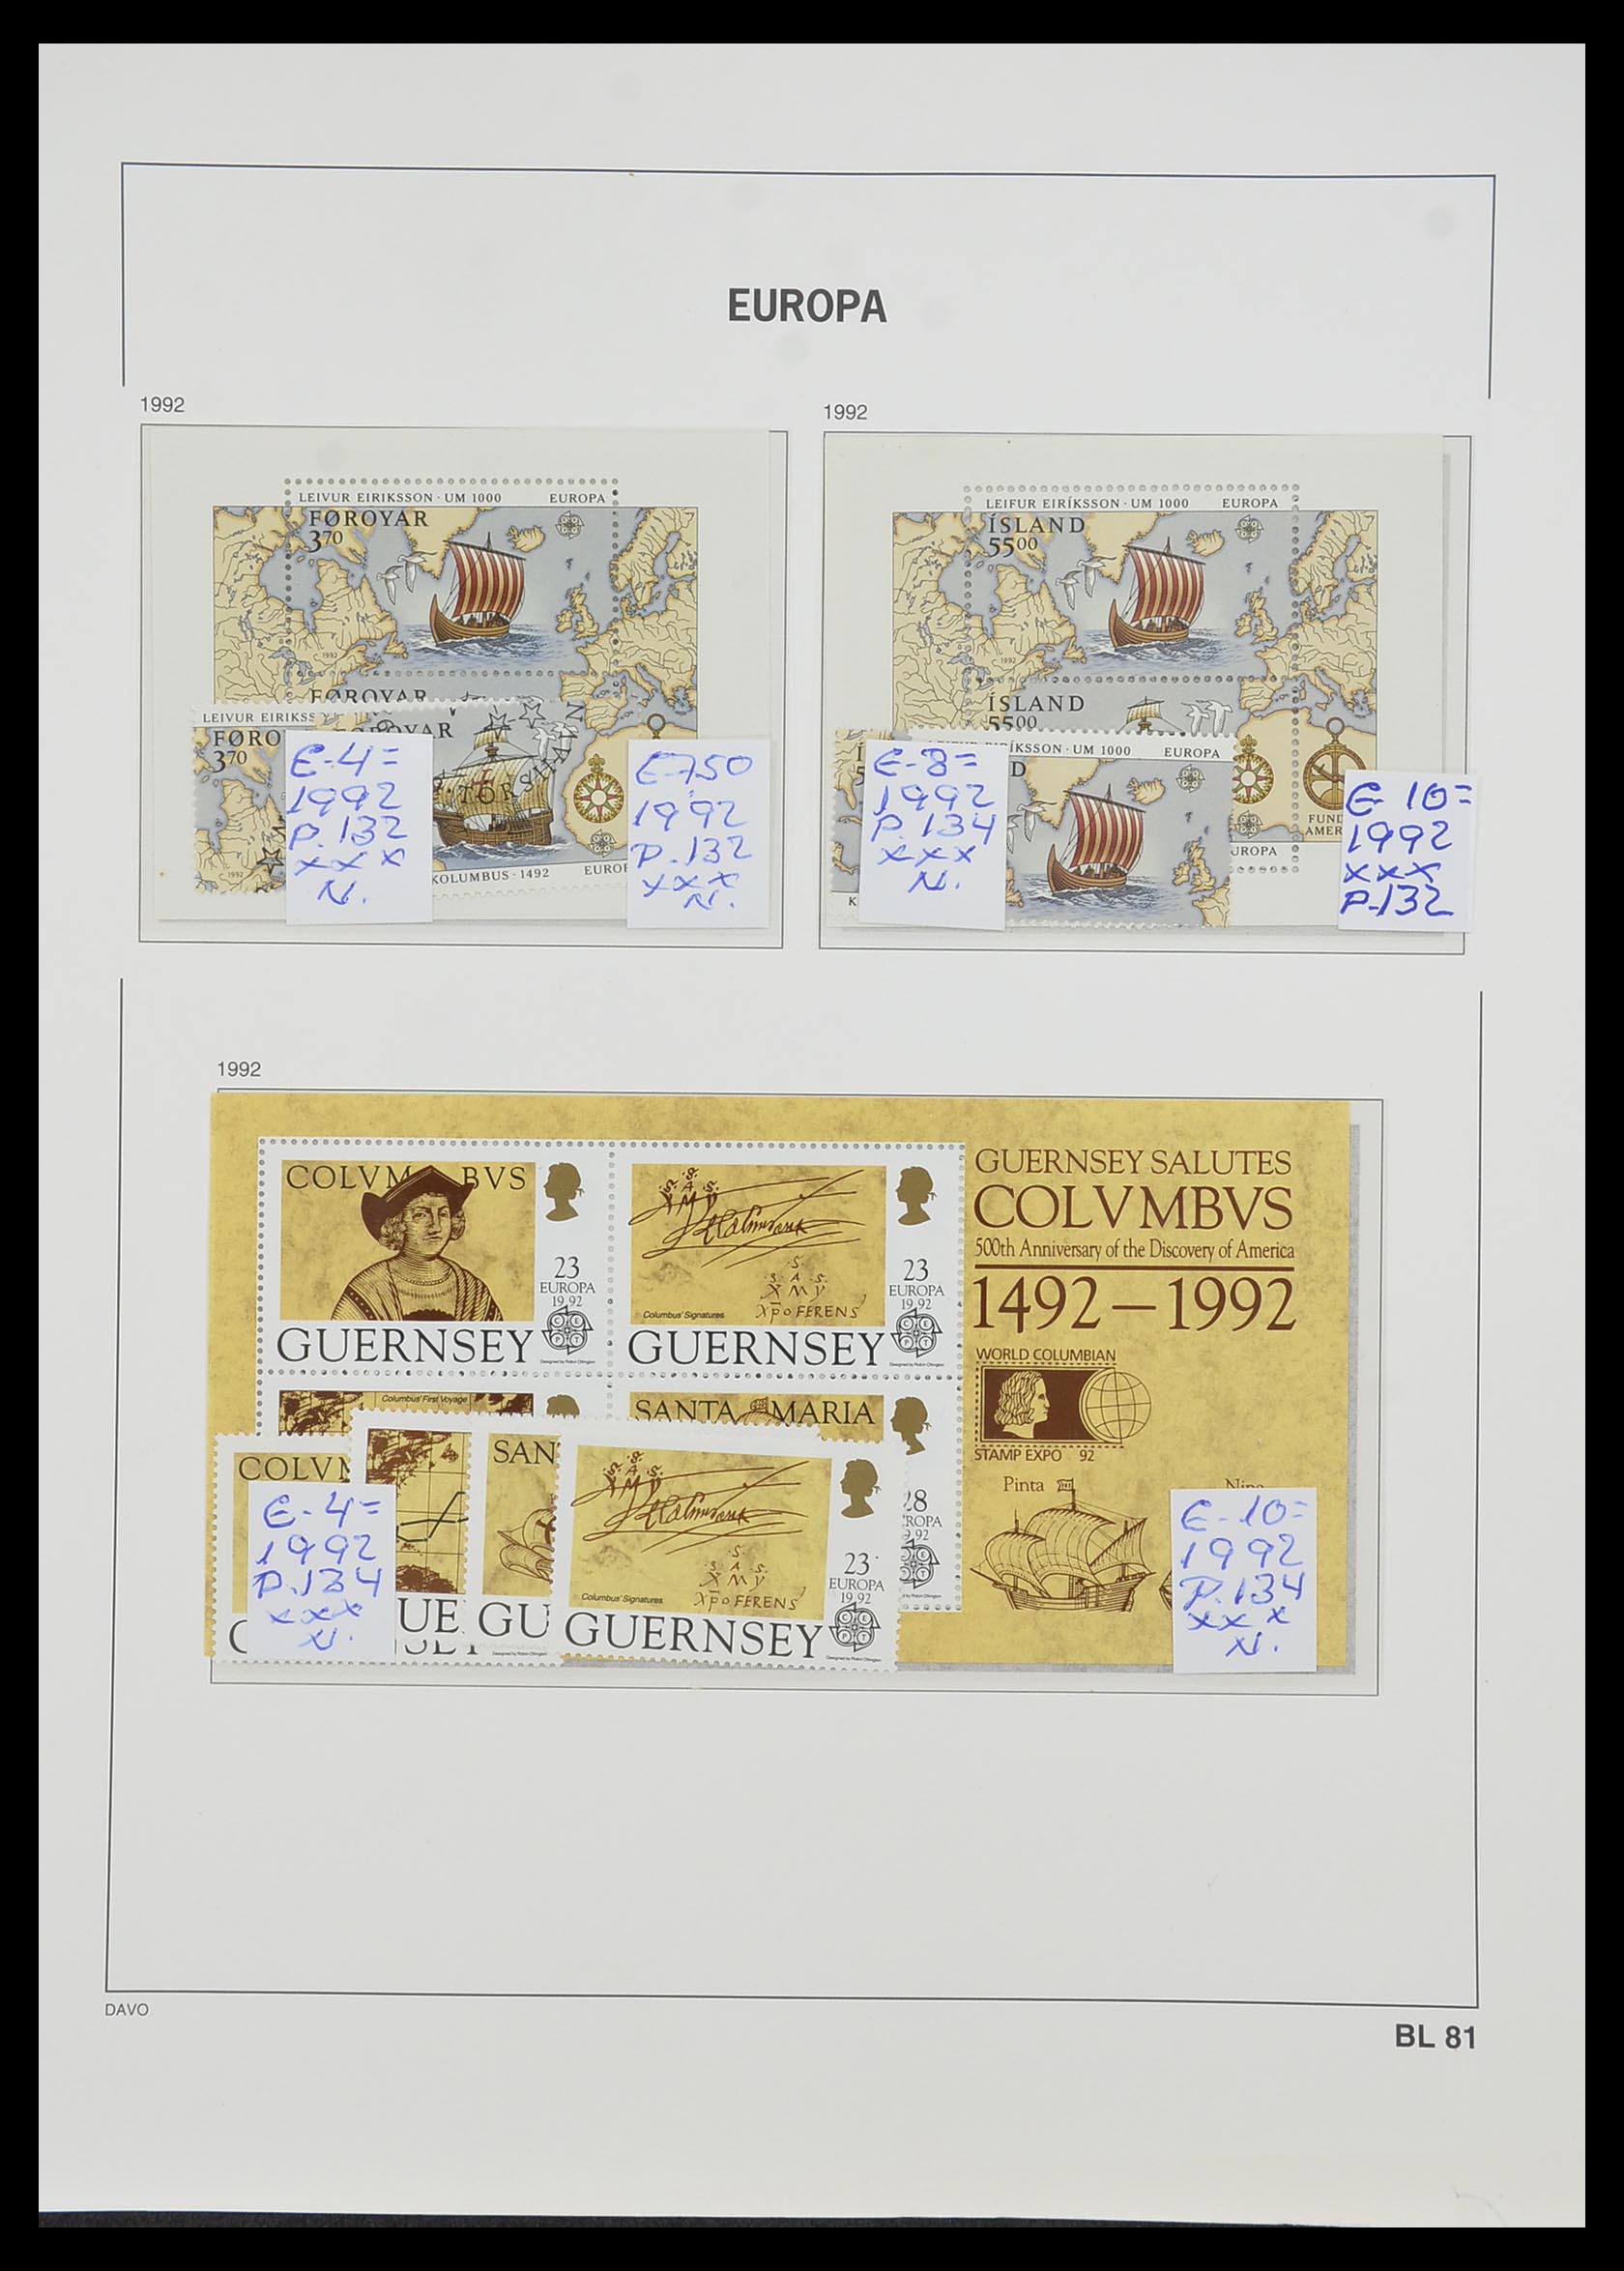 33985 071 - Stamp collection 33985 Europa CEPT souvenir sheets 1974-2014.